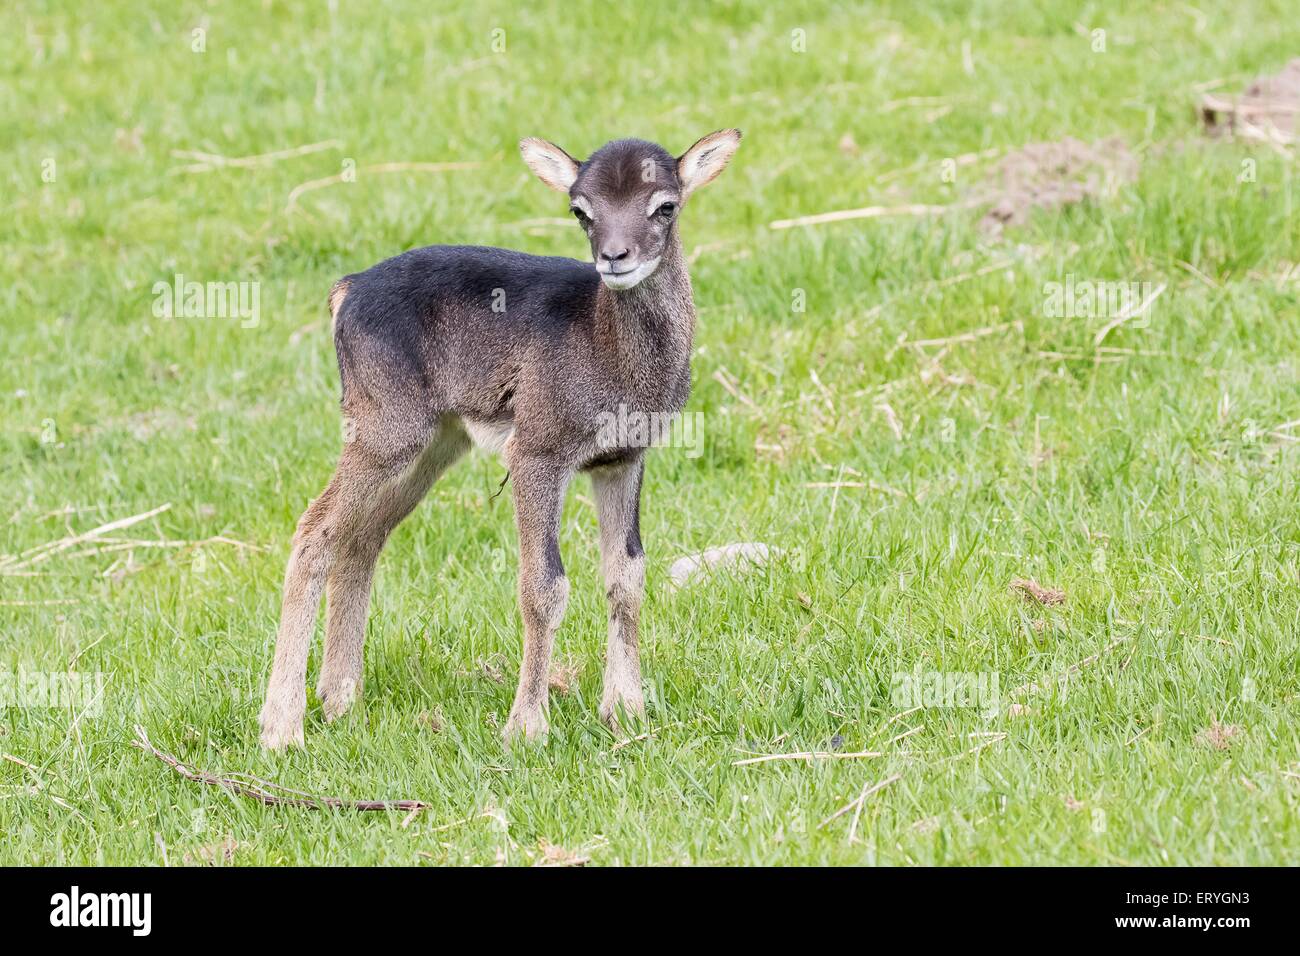 Young mouflon (Ovis orientalis), Masuria, Poland Stock Photo